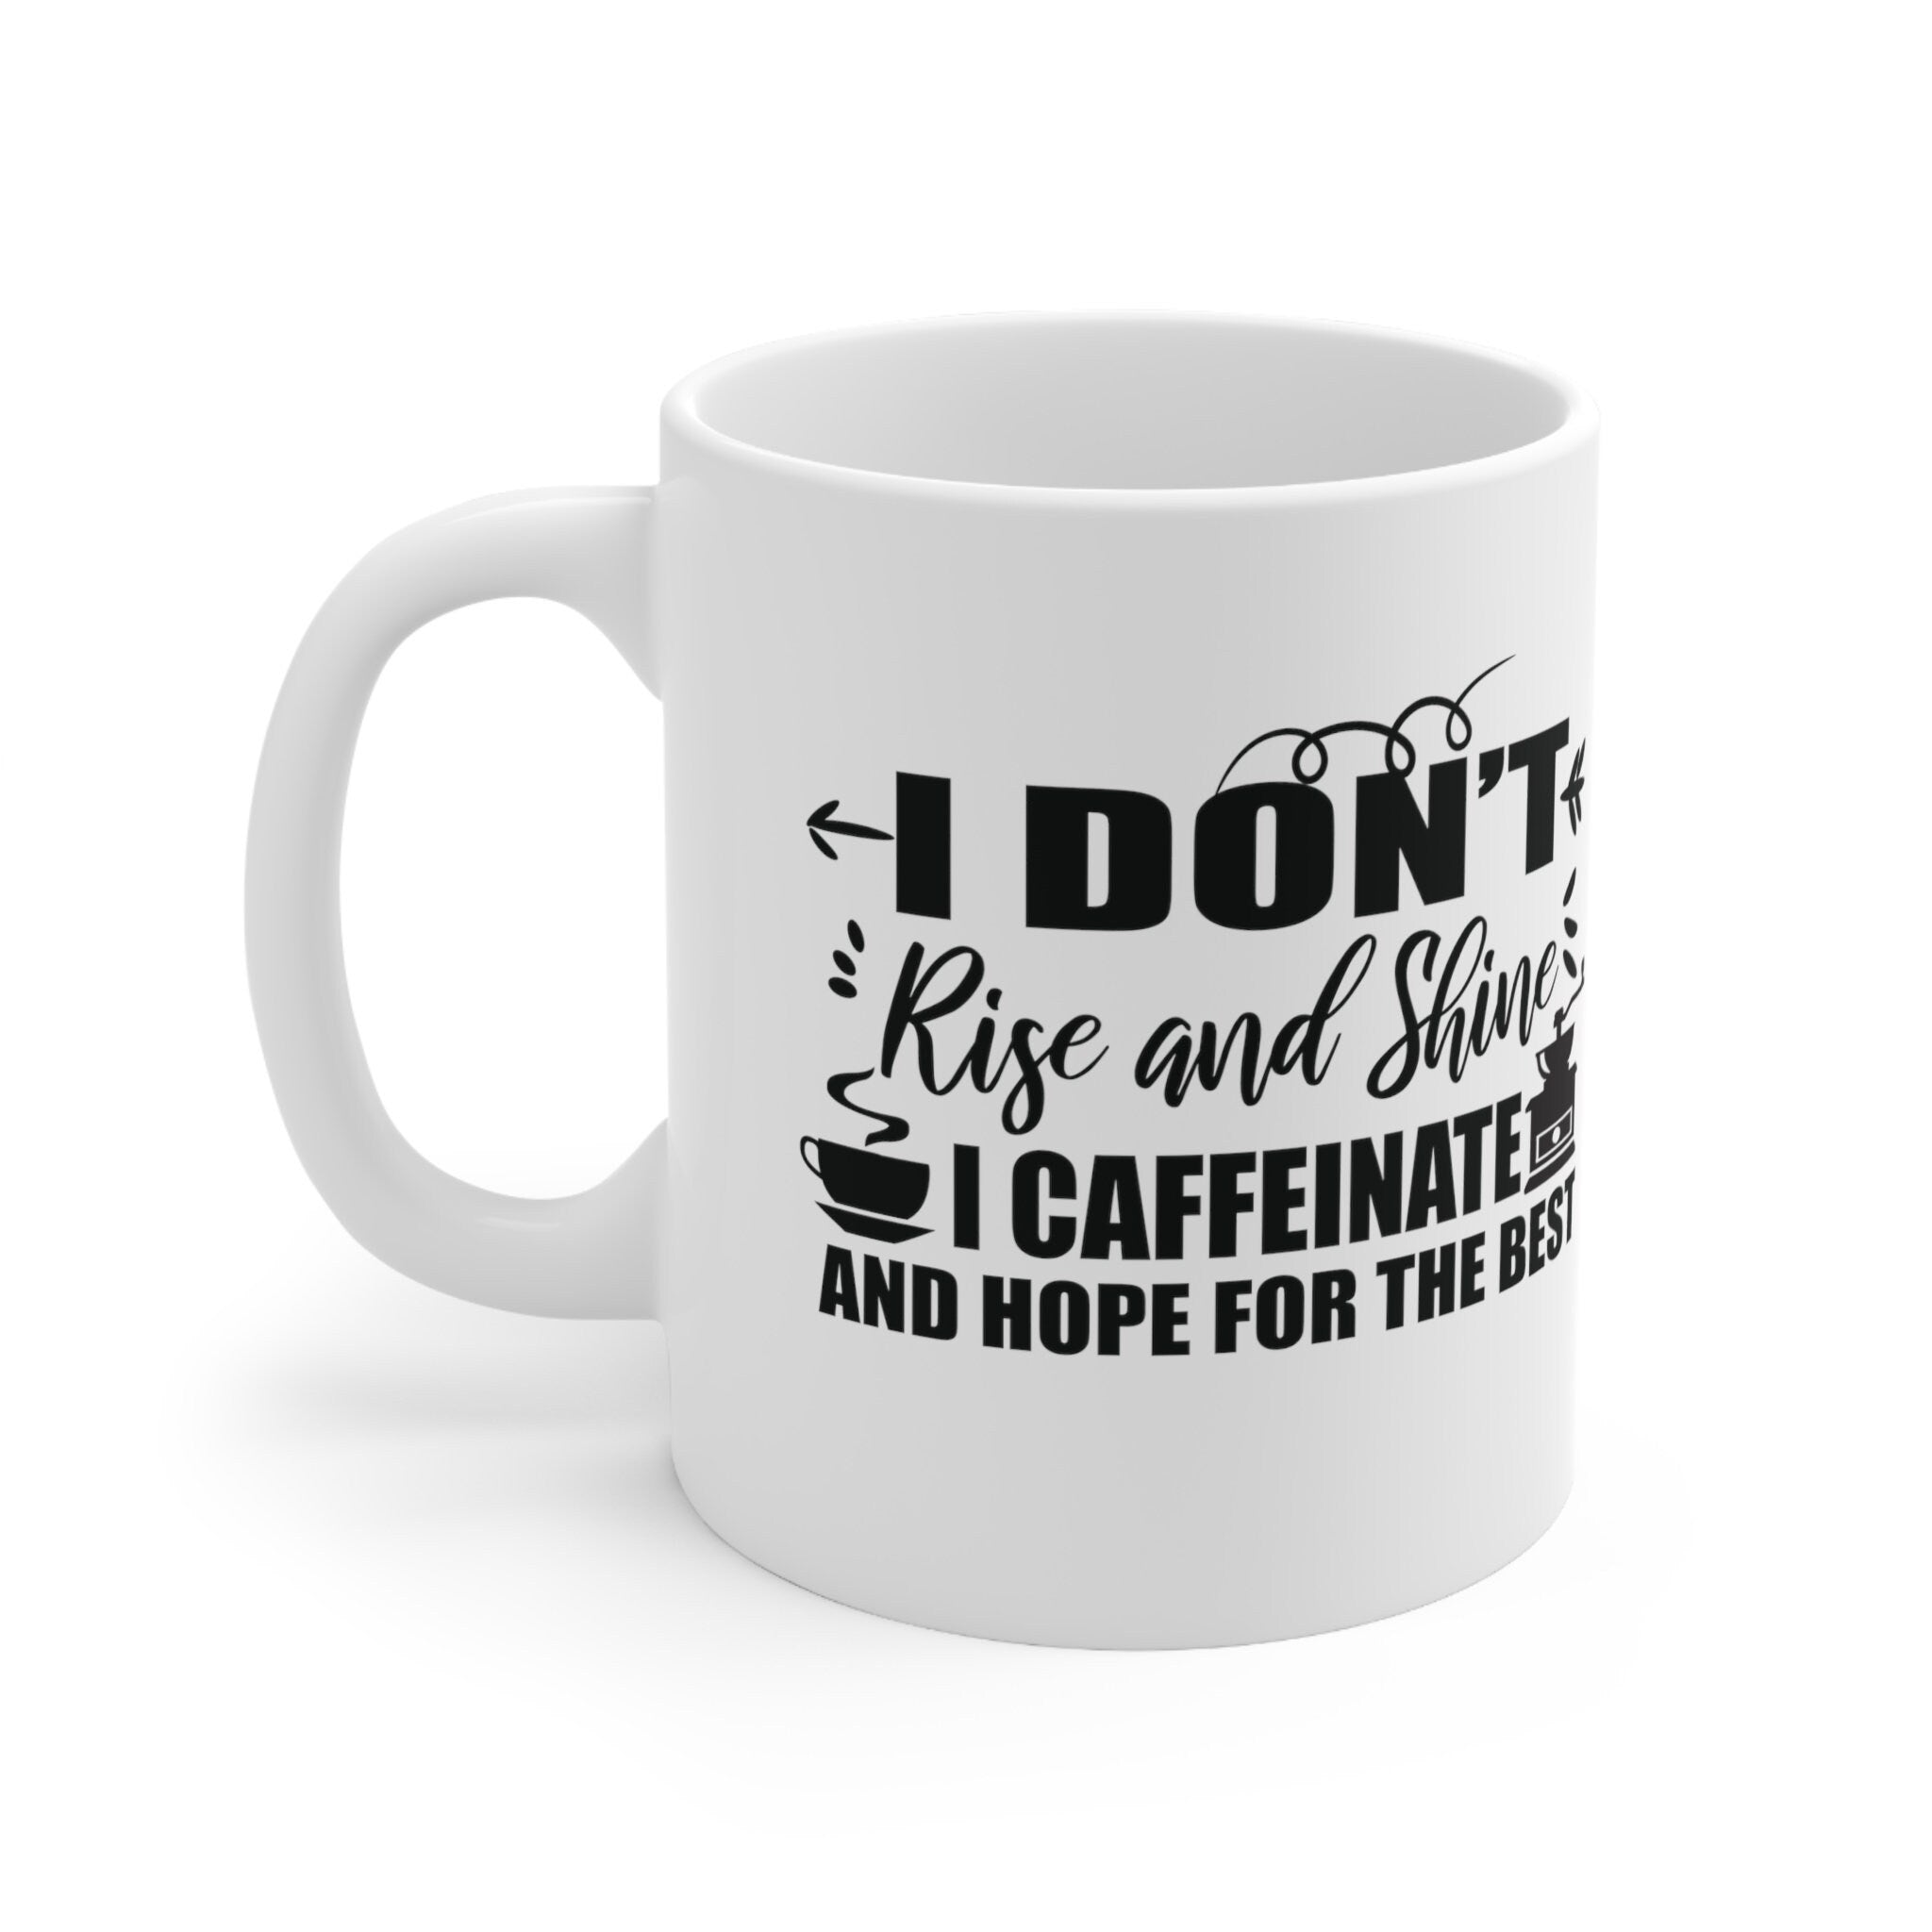 I Don't Rise and Shine I Caffeinate 11oz White Ceramic Mug - Funny Coffee Cup